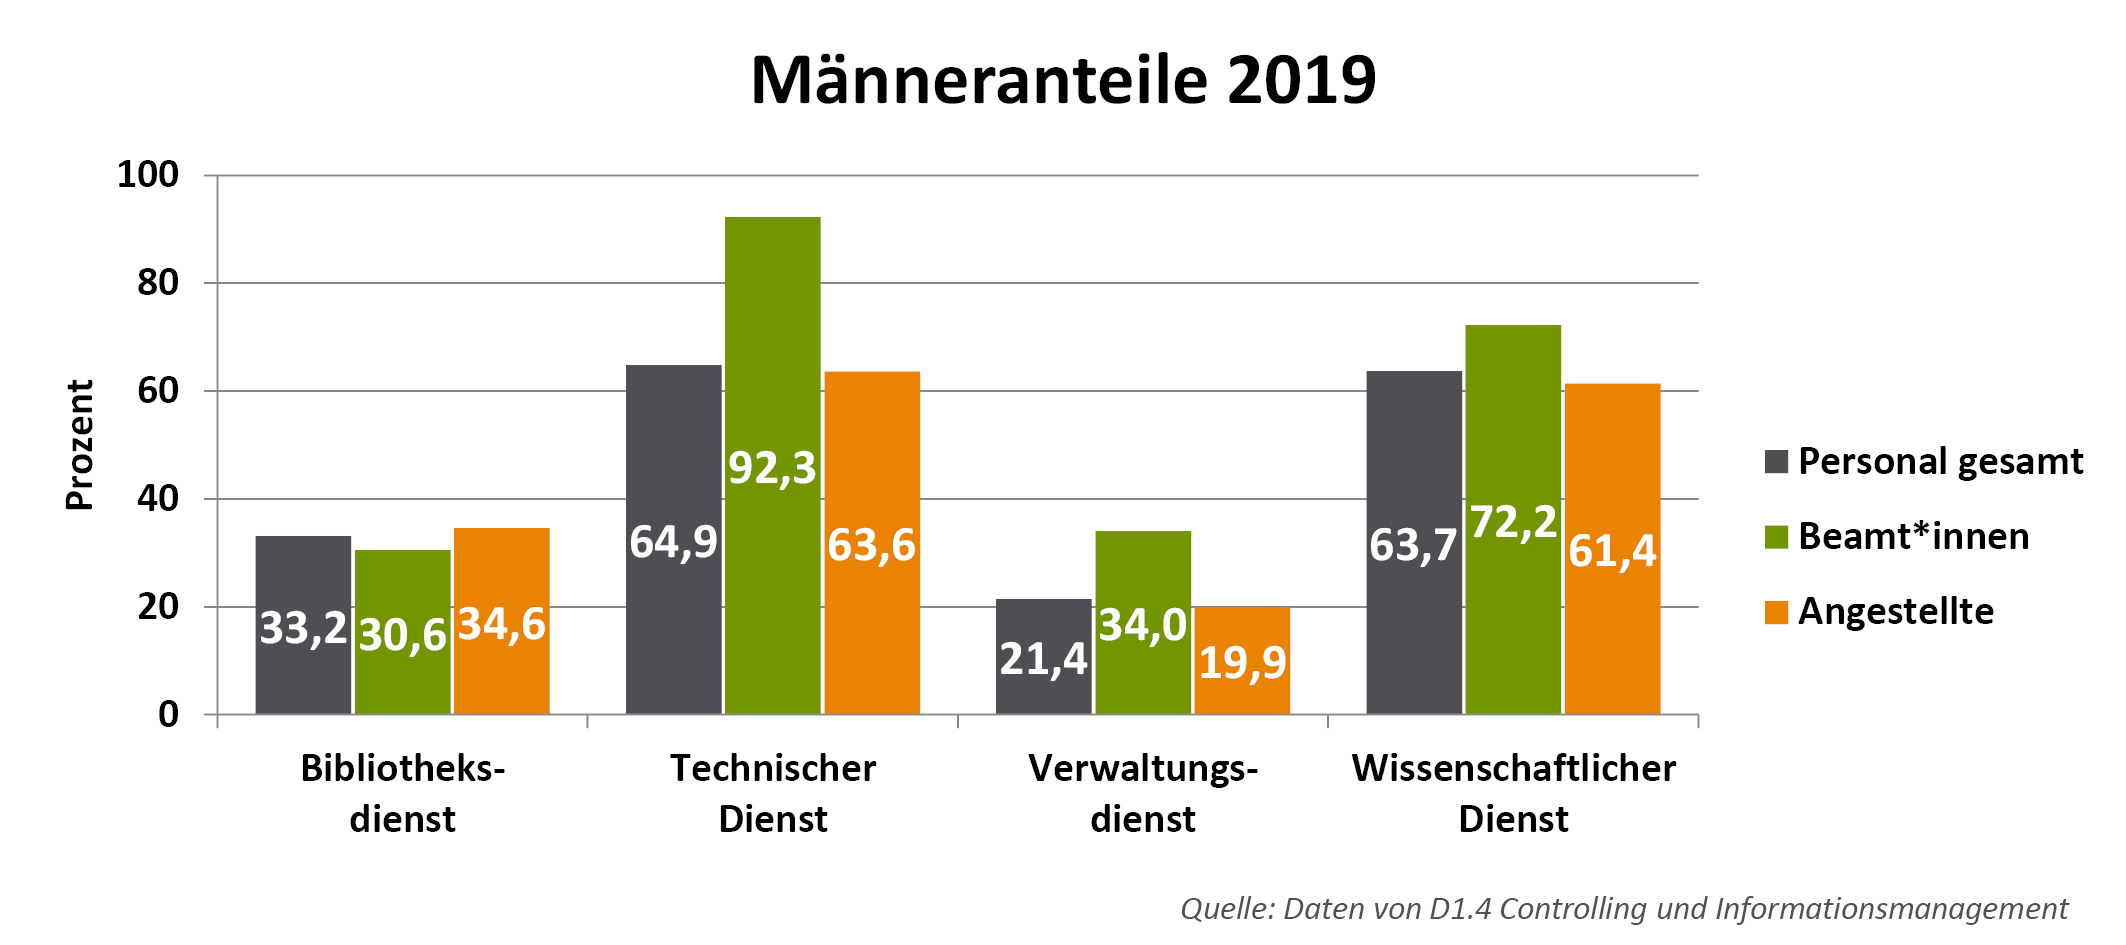 Männeranteil bei Beschäftigten der Universität Freiburg (Beamt:innen und Angestellte) 2019, unterschieden nach Dienstart. Beim Personal gesamt: insgesamt: 51,2 %; Beamt:innen: 62,1 %; Angestellte: 48,8 %. Im Bibliotheksdienst: Personal gesamt: 33,2 %; Beamt*innen: 30,6 %; Angestellte: 34,6 %. Technischer Dienst: insgesamt: 64,9 %; Beamt:innen: 92,3%; Angestellte: 63,6 %. Im Verwaltungsdienst: insgesamt: 21,4 %; Beamt:innen: 34,0 %; Angestellte: 19,9 %. In Verwaltung, Service und Technik: insgesamt: 35,2 %; Beamt:innen: 39,3%; Angestellte: 34,7 %. Im Wissenschaftlichen Dienst: insgesamt: 63,7 %; Beamt:innen: 72,2 %; Angestellte: 61,4 %. 